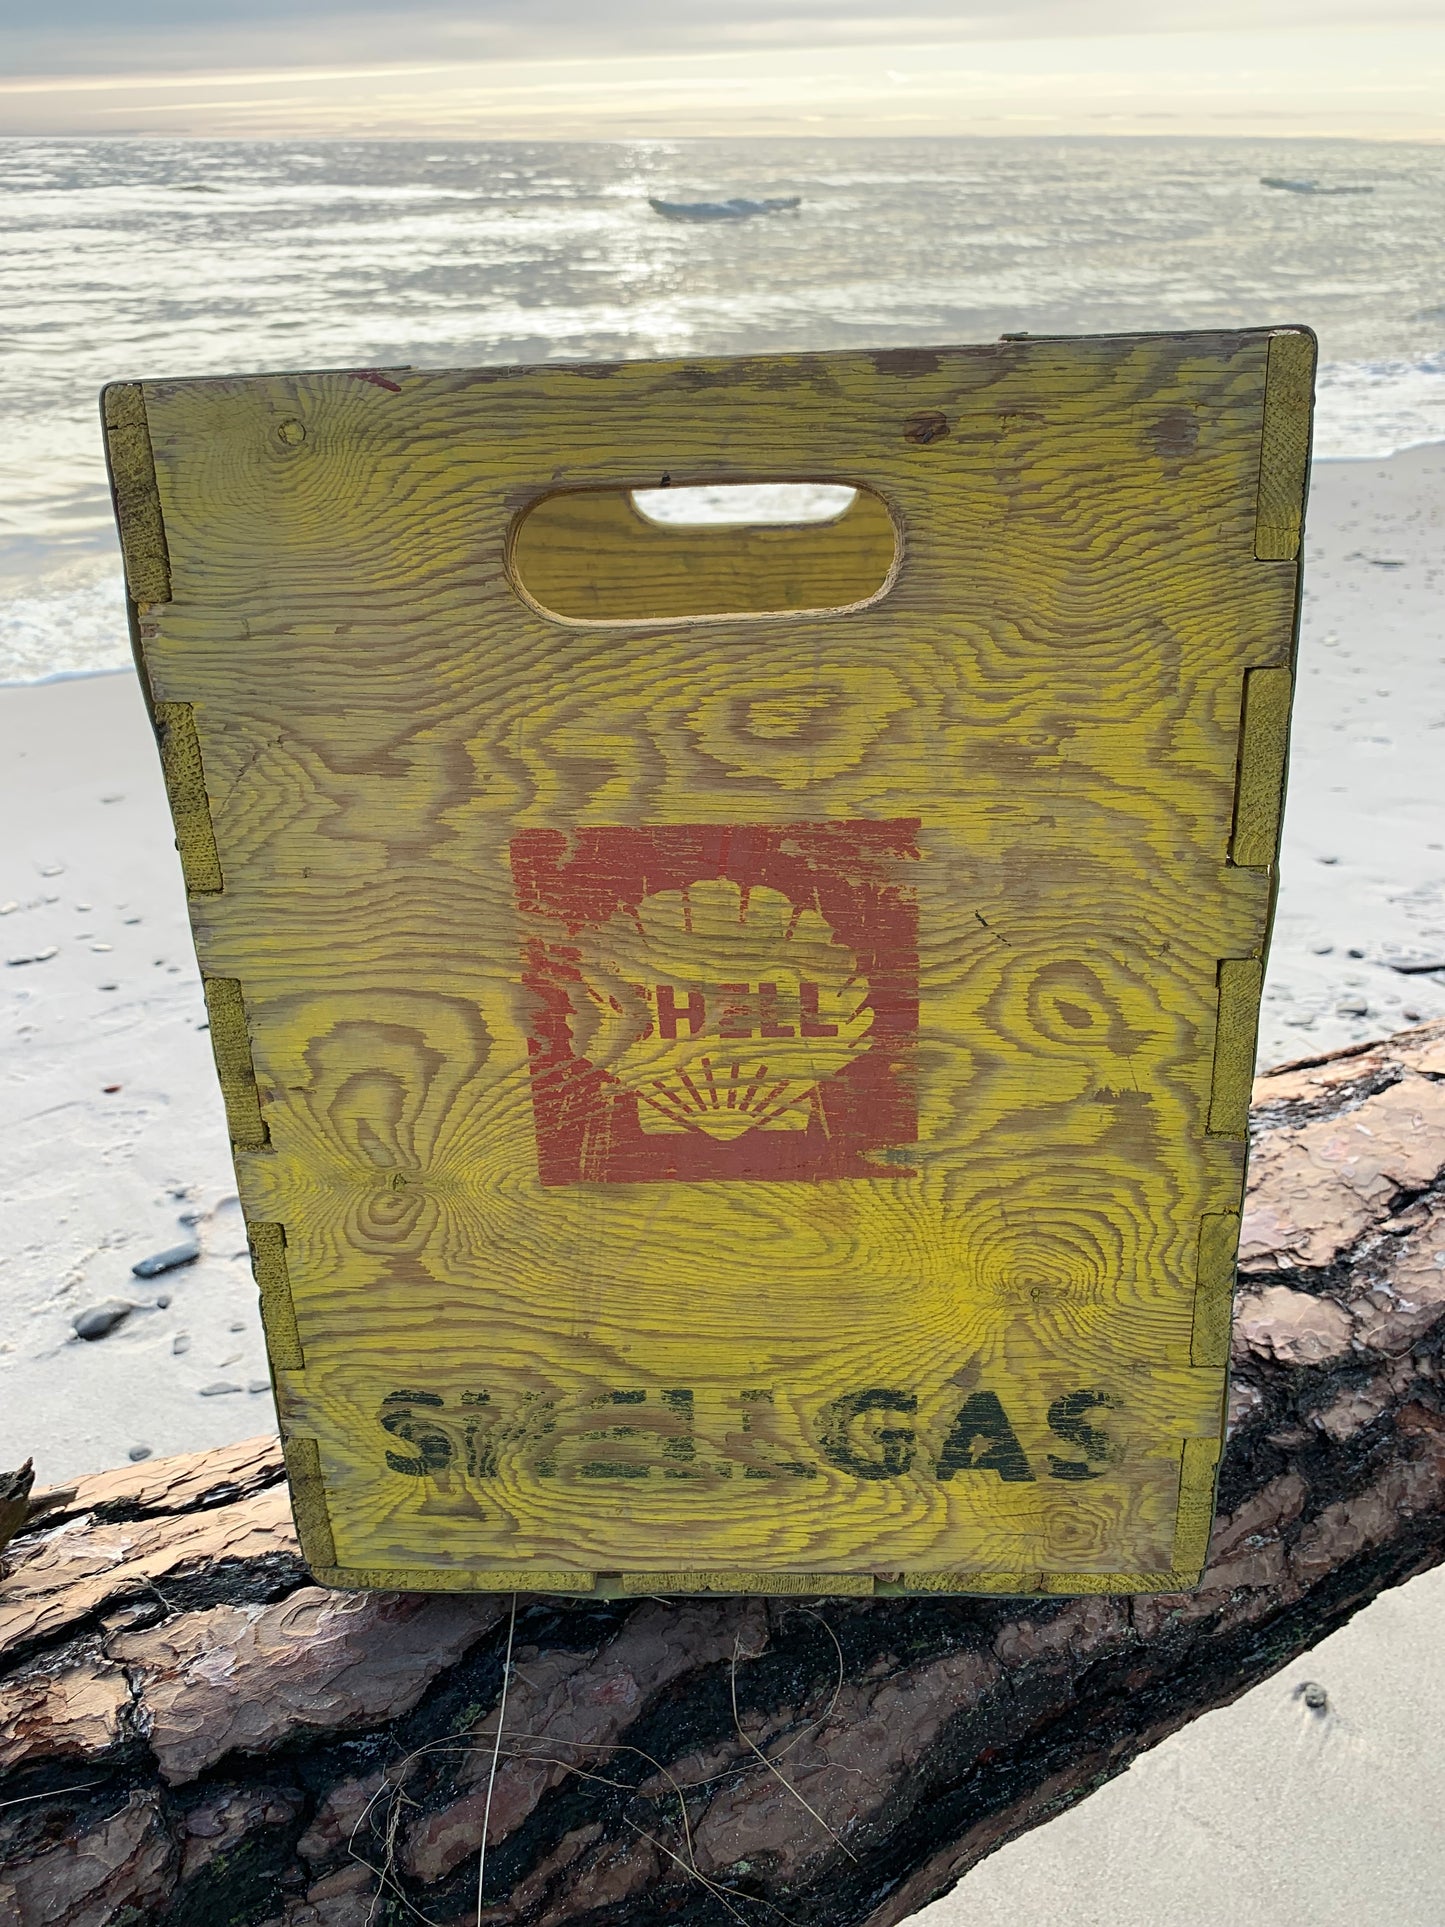 Shell gas kasse fra Stockholm